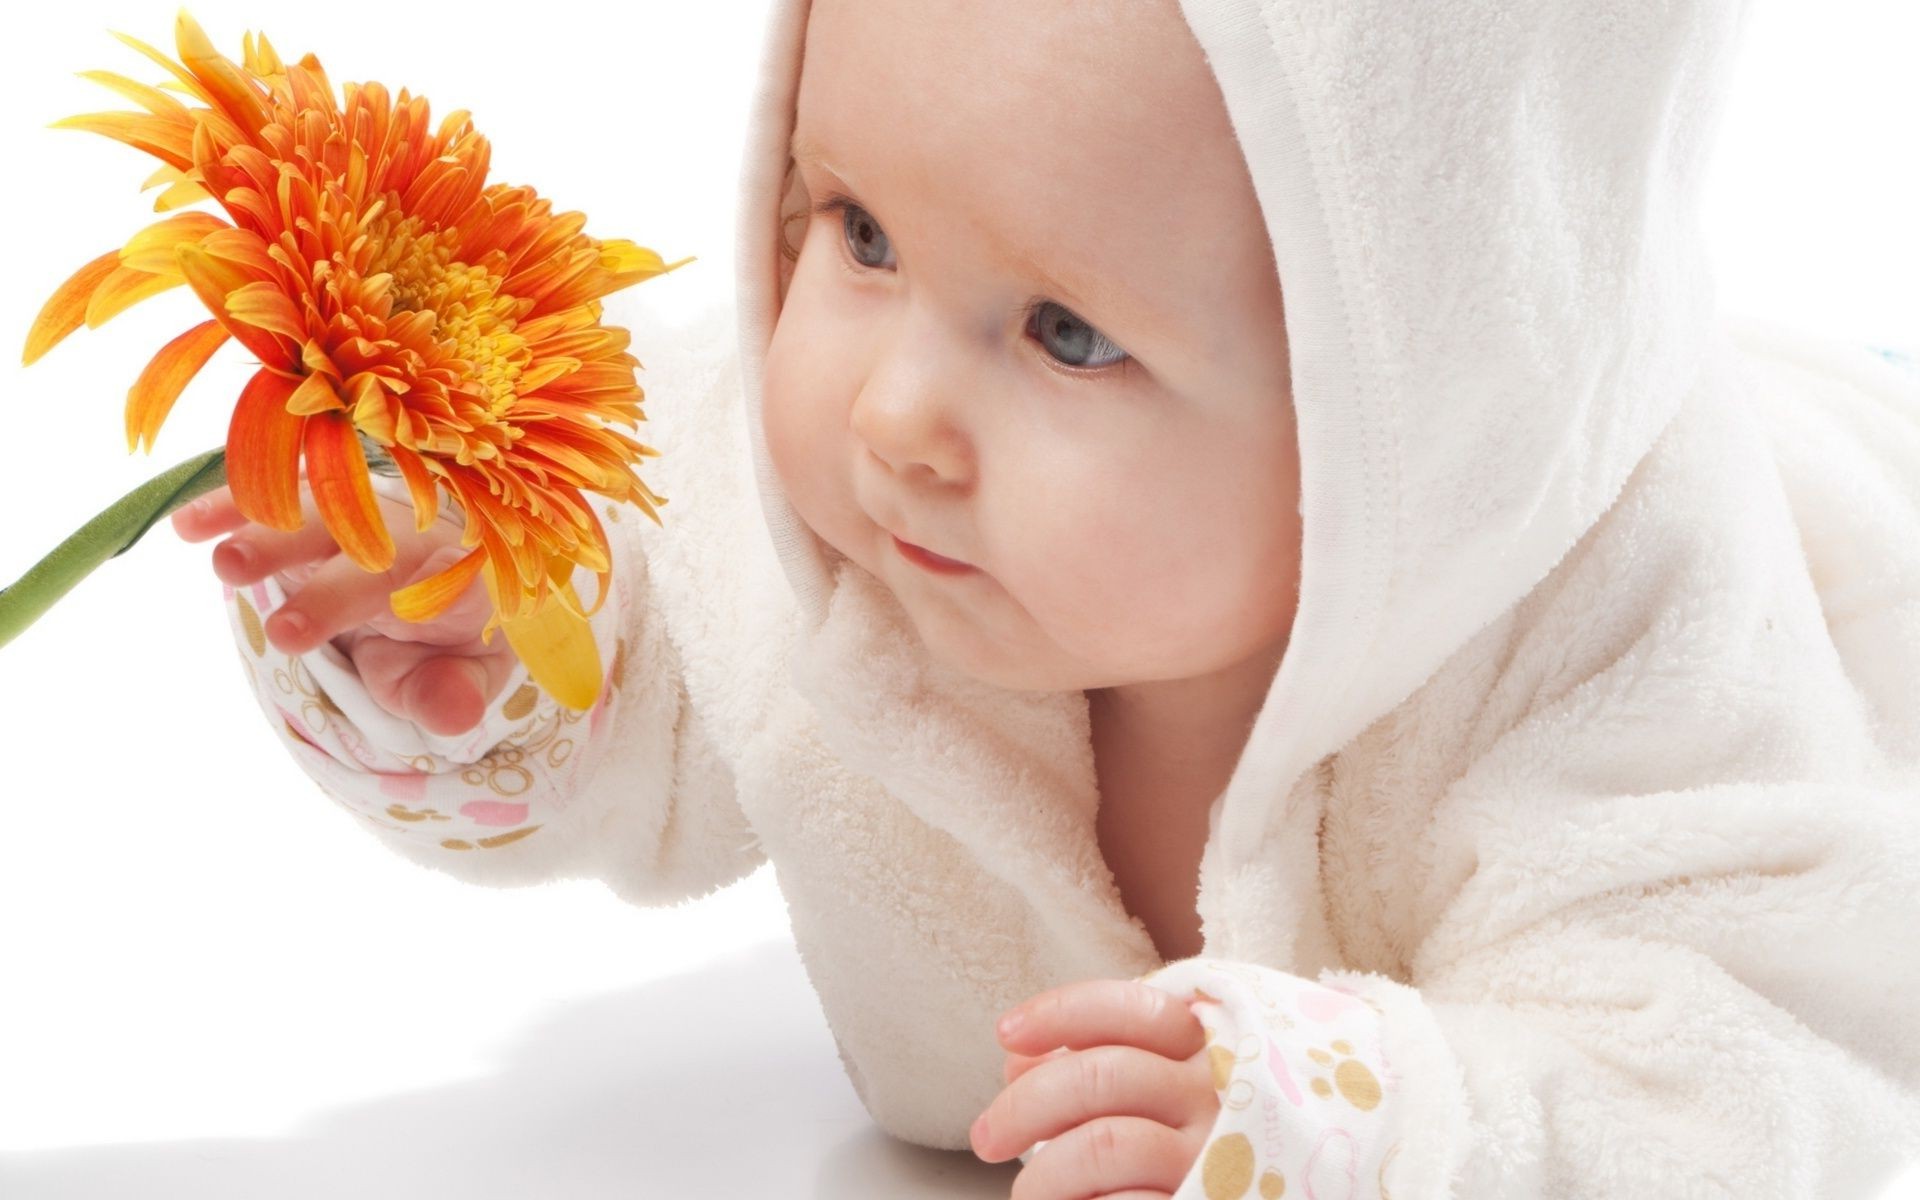 младенцы релаксация здоровья чистота лечение чистые красивые цветок полотенце довольно массаж кожа хладнокровие гармония женщина